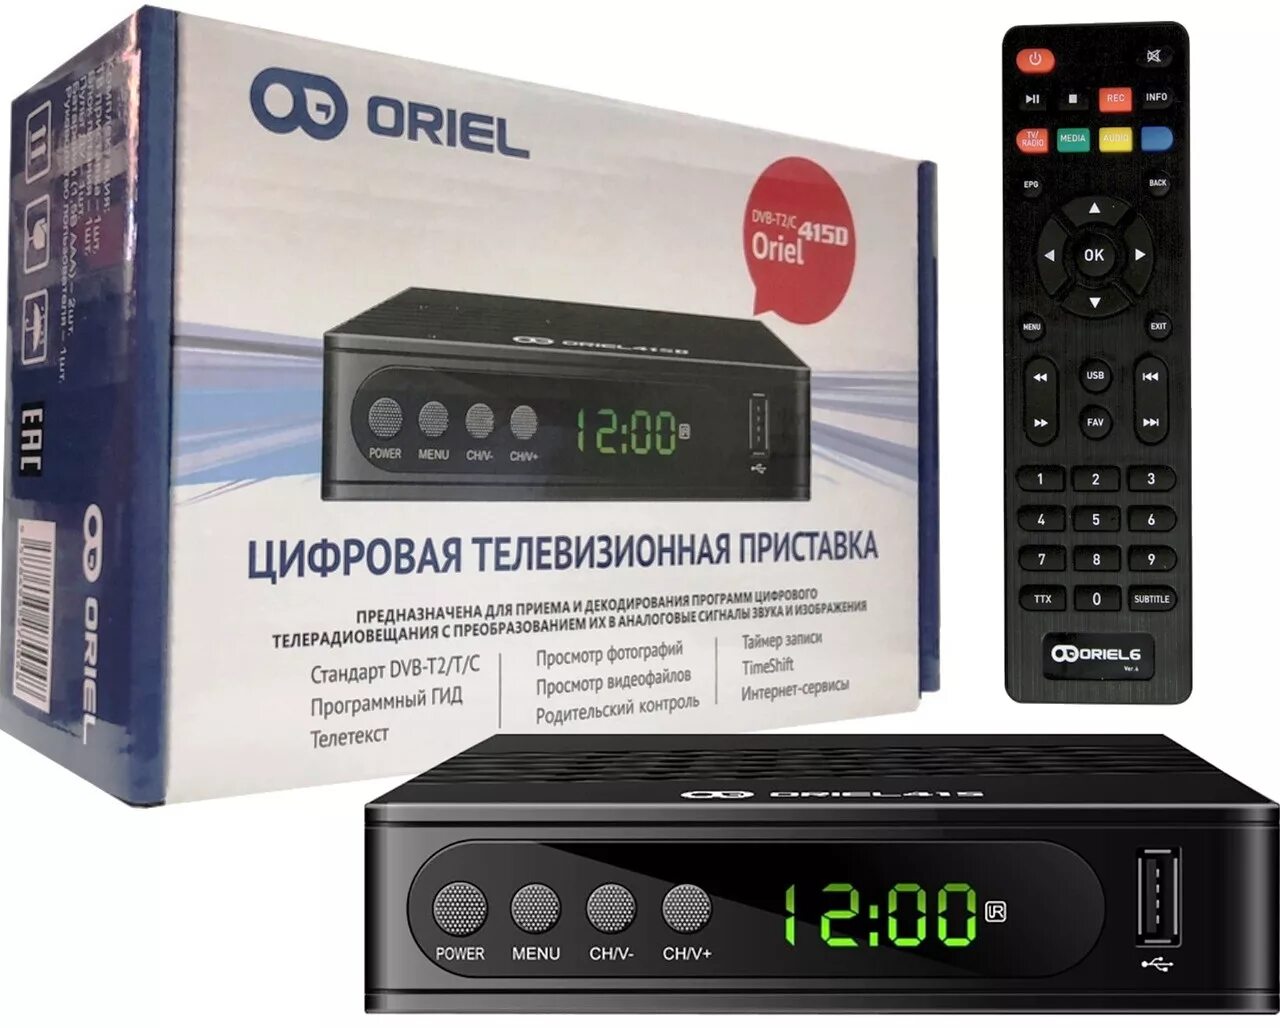 Приставка для цифрового телевидения Oriel 415d. Цифровая телевизионная приставка Oriel DVB-t2. Oriel 415 (DVB-t2/c). Приставка для цифрового телевидения Oriel 421. Эфирное тв приставка